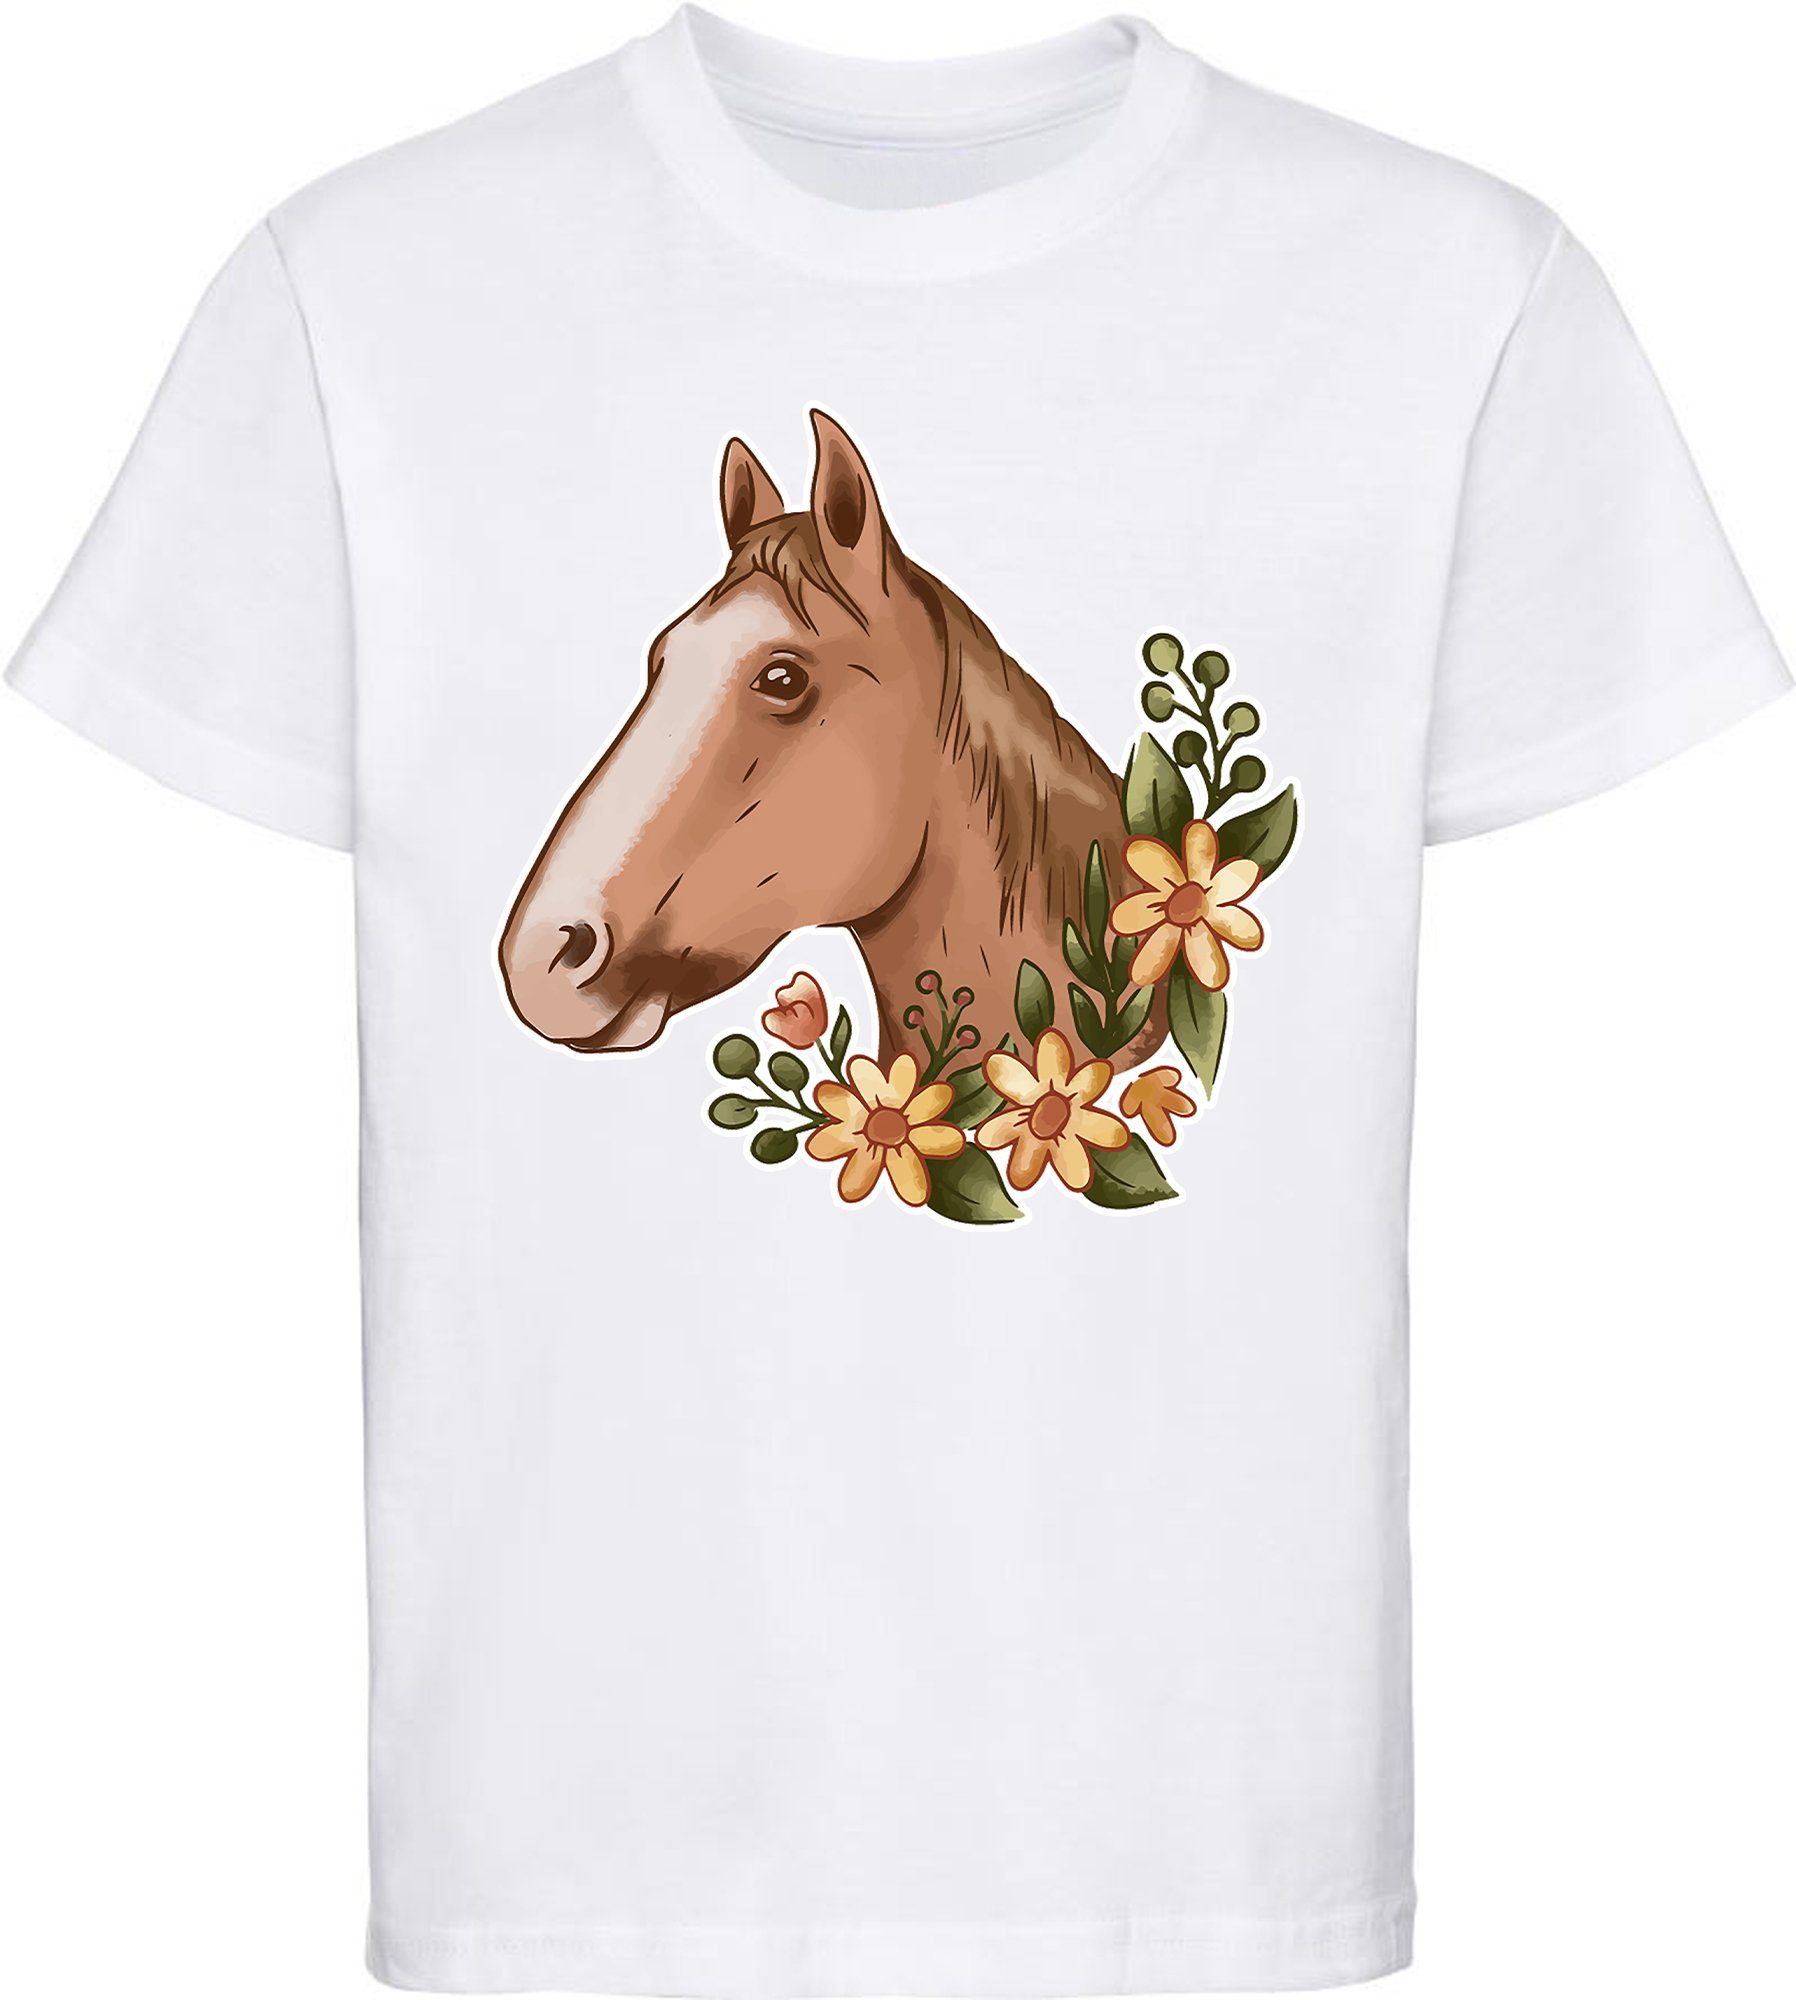 MyDesign24 Print-Shirt bedrucktes Kinder Mädchen T-Shirt - Hellbrauner Pferdekopf und Blumen Baumwollshirt mit Aufdruck, i181 weiss